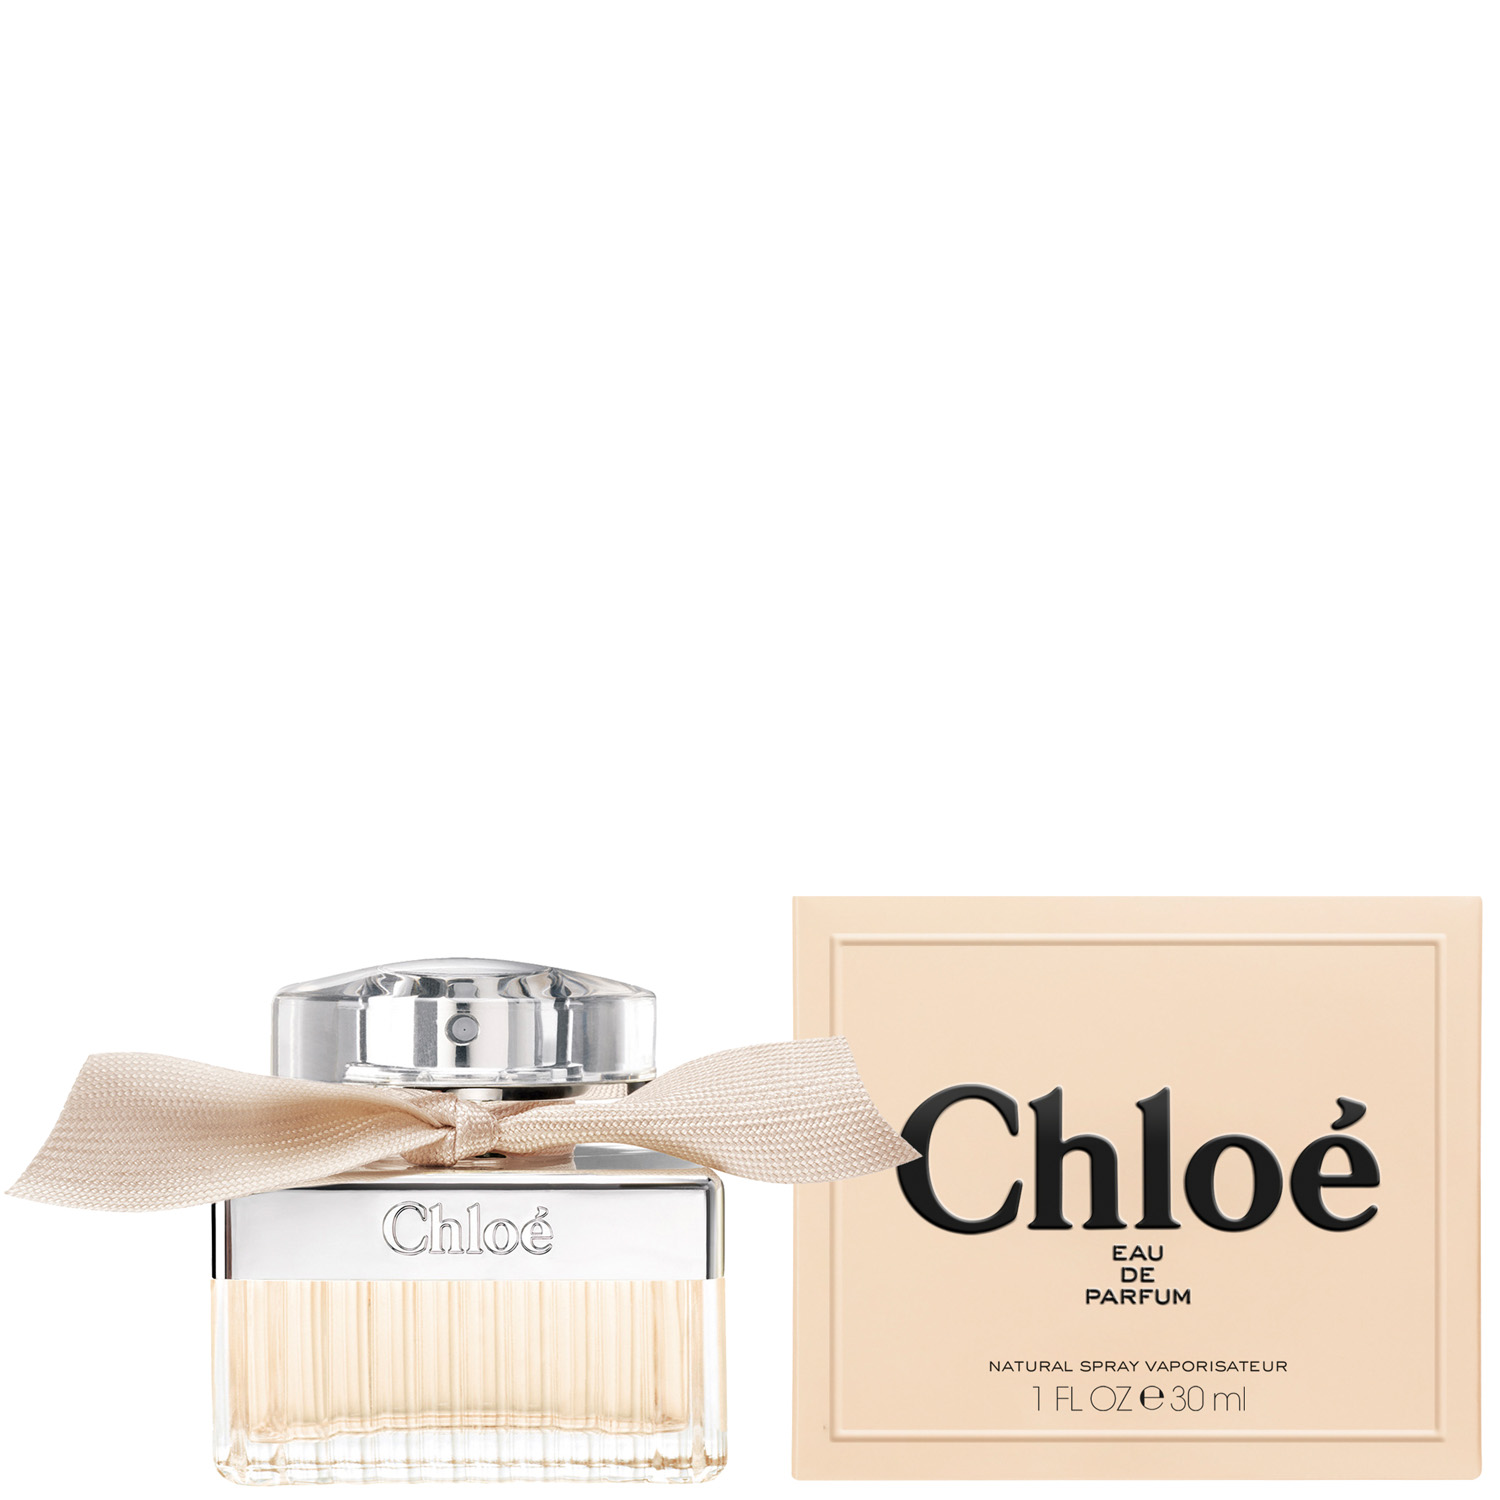 Chloé by Chloé Eau de Parfum 30ml